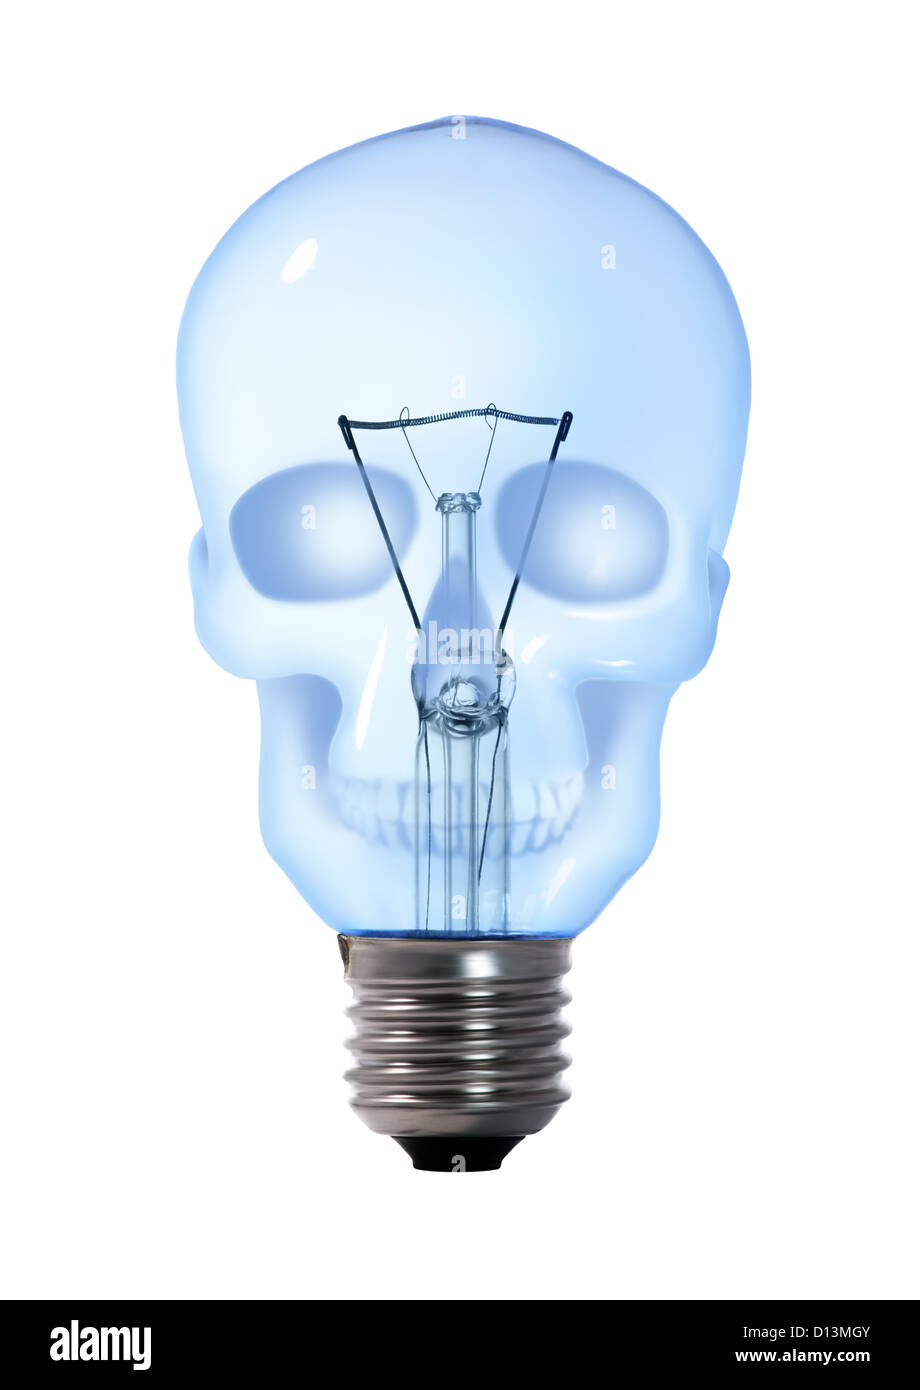 Schädel-Wolfram-Glühbirne Lampe auf weißem Hintergrund Stockfotografie -  Alamy